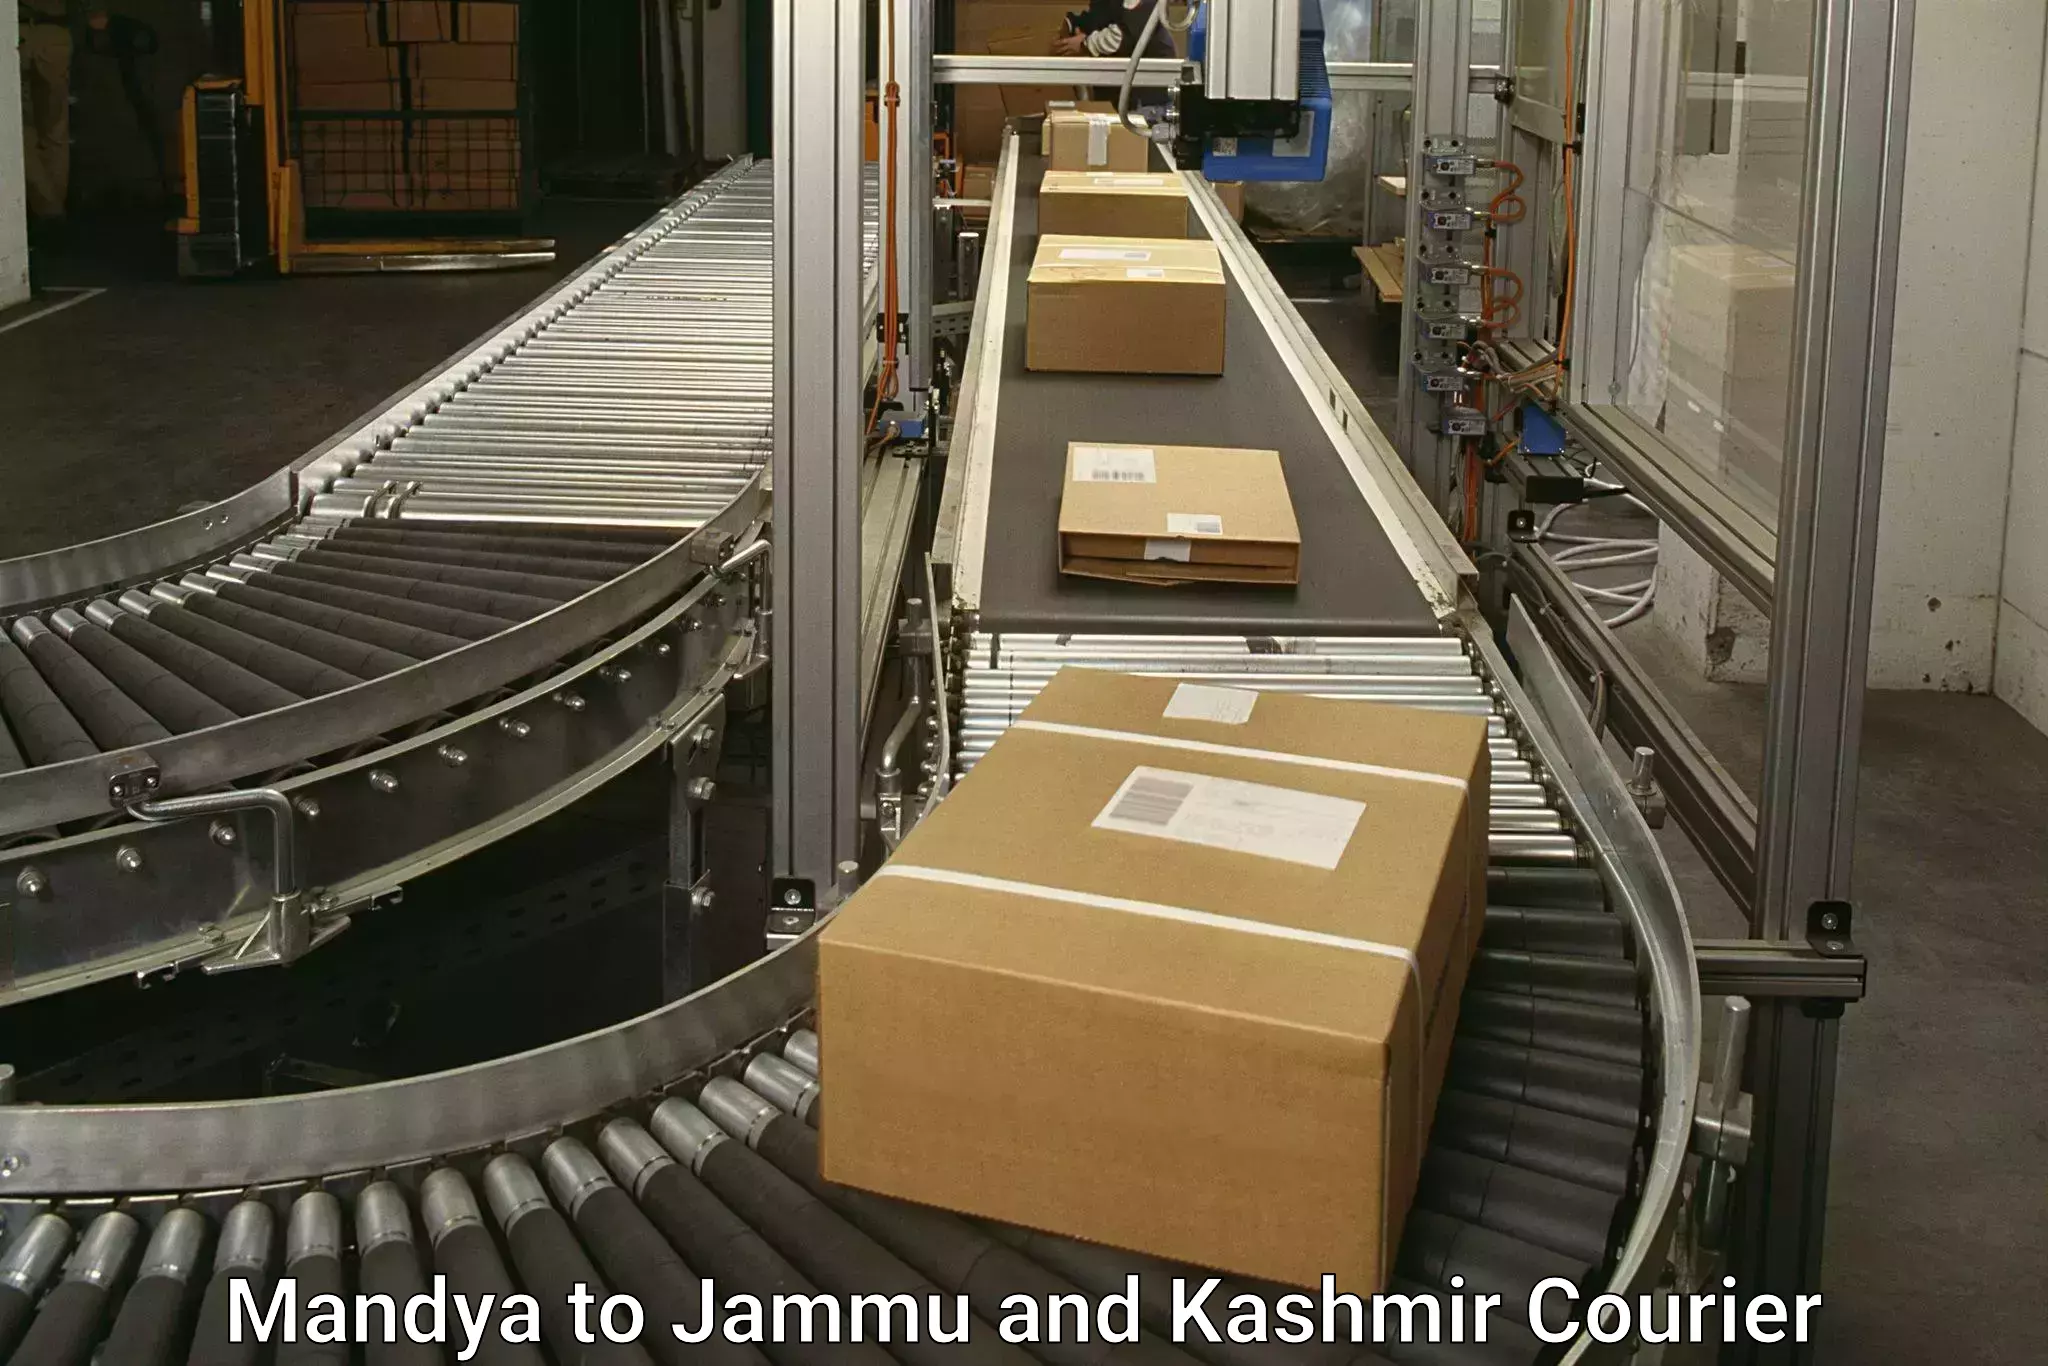 Custom courier packaging Mandya to Shopian